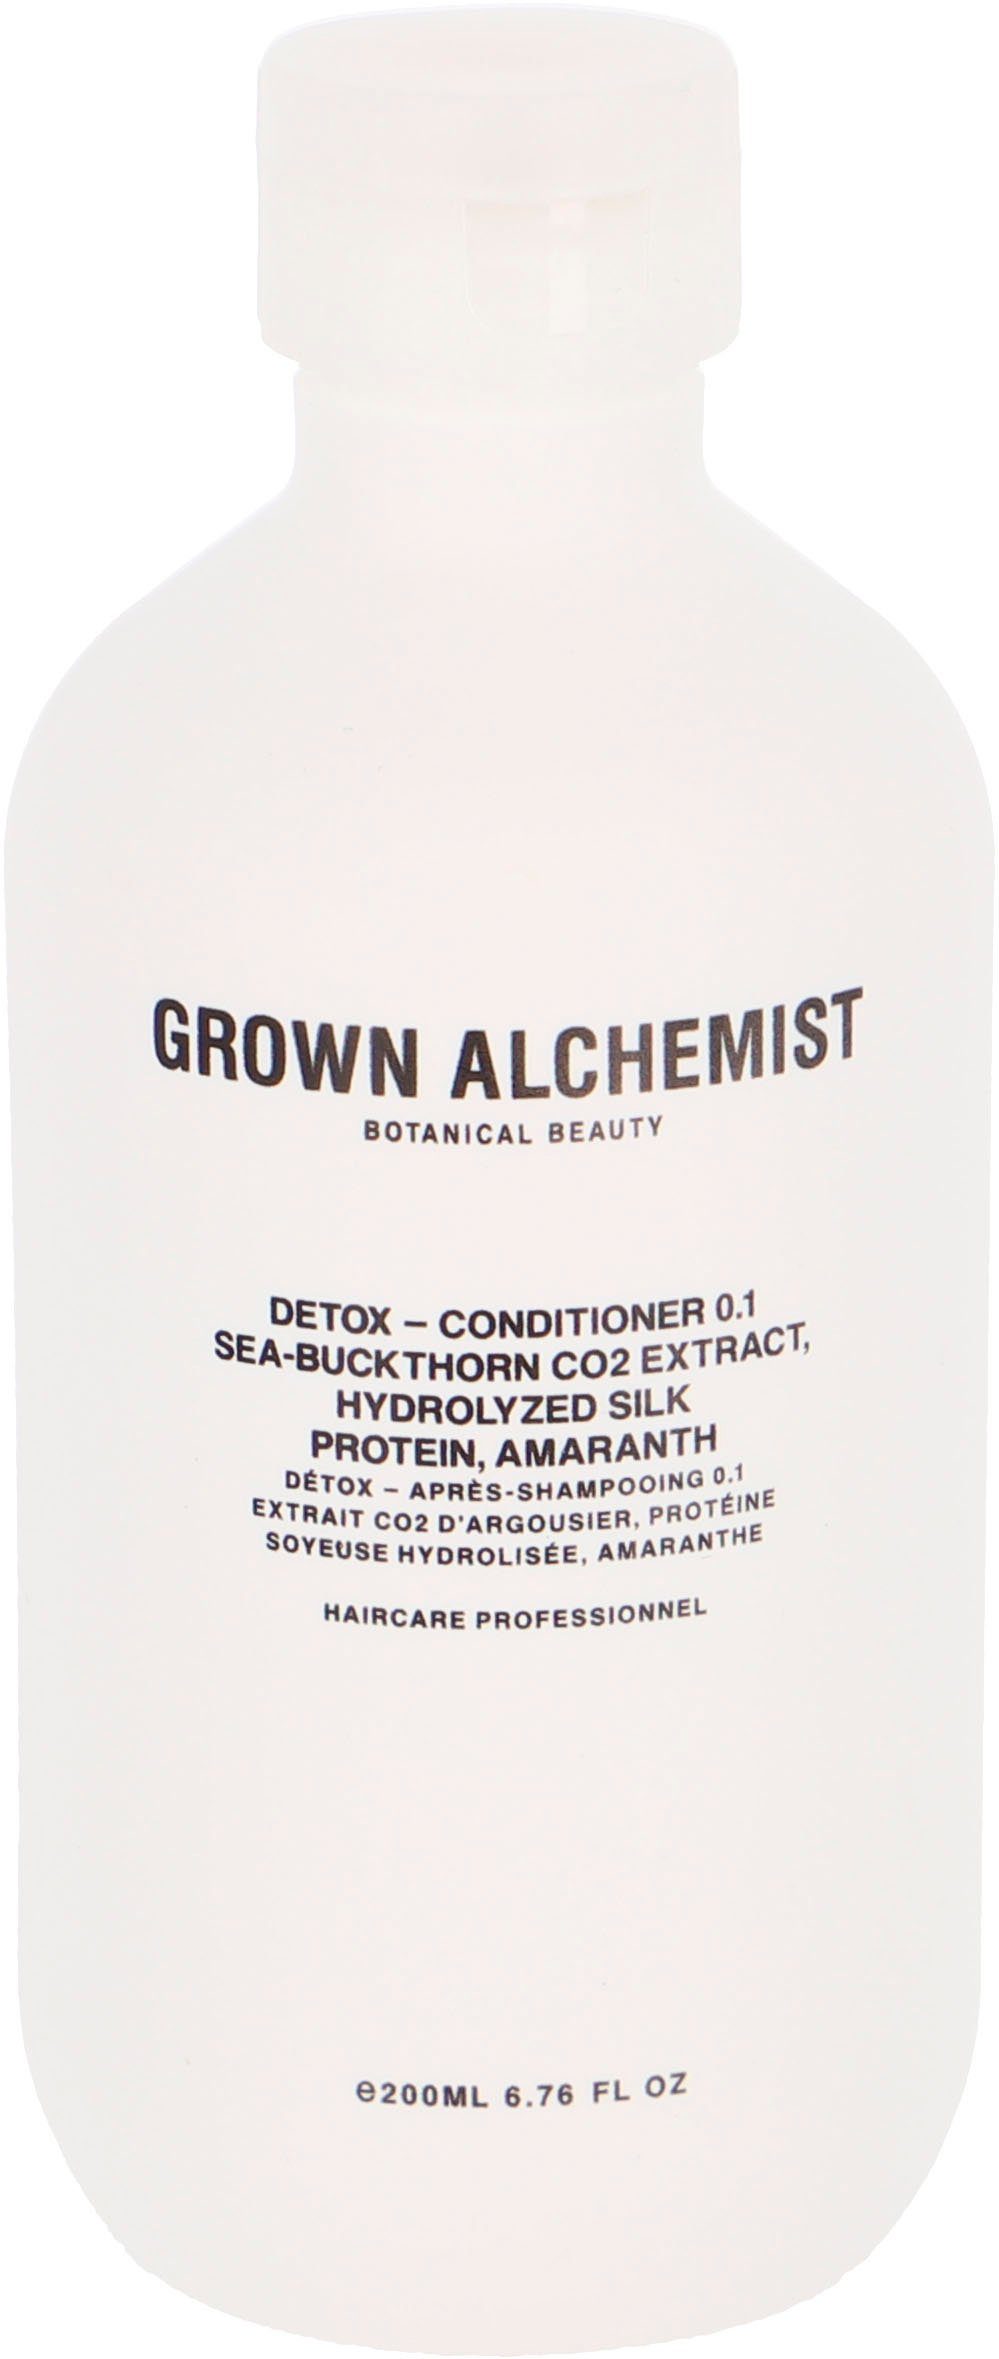 GROWN ALCHEMIST Haarspülung Detox - Conditioner 0.1, Sea-Buckthorn CO2 Extract, Hydrolyzed Silk Protein, Amaranth 500 ml | Spülungen